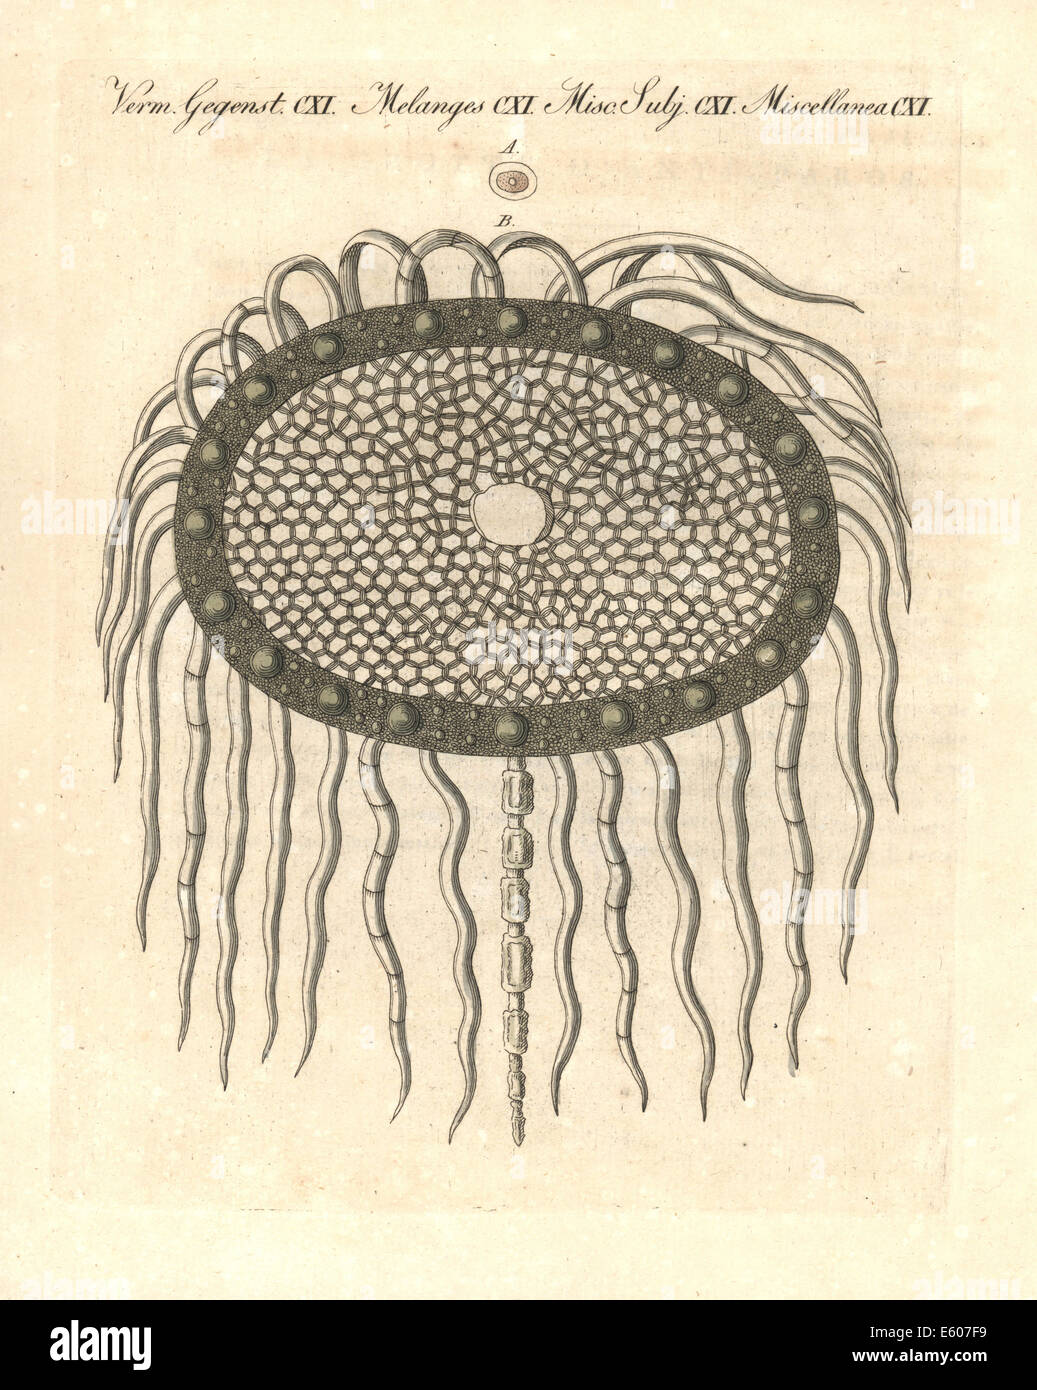 Thistle pulpa amplía las células bajo un microscopio, siglo XVIII. Foto de stock